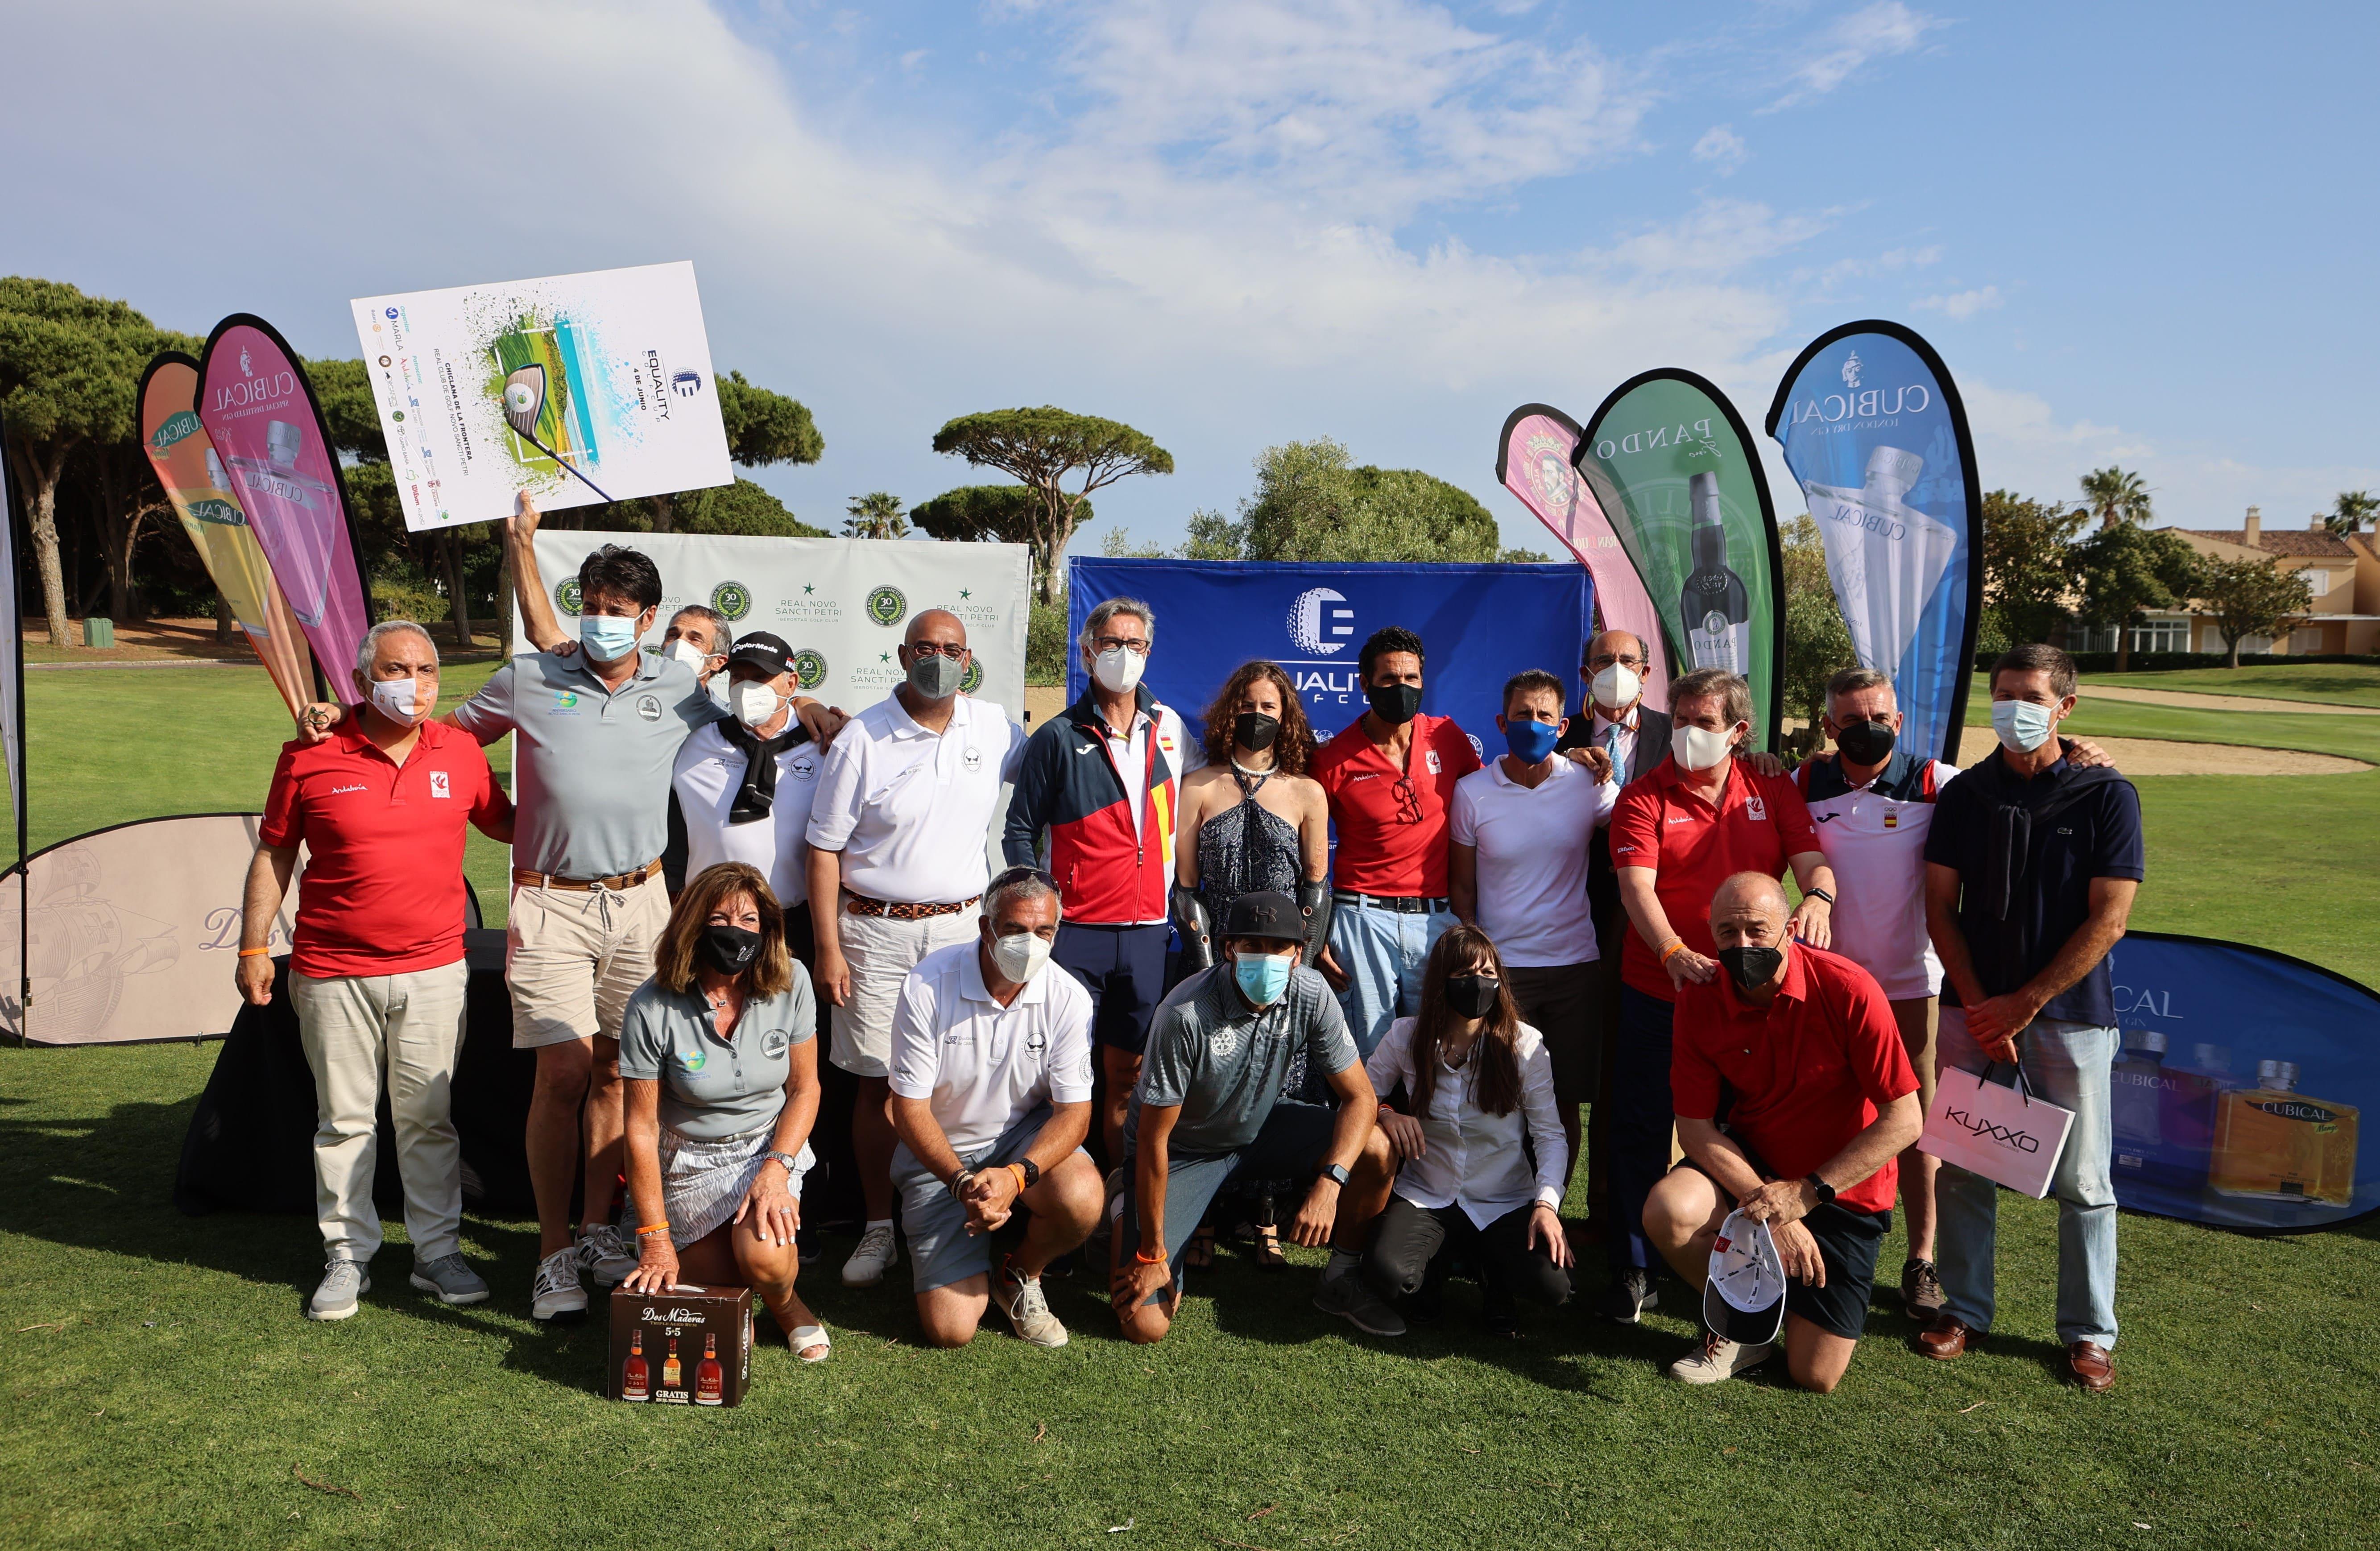 El equipo ADACCA "Los Gallos" vence en el torneo solidario Equality Golf Cup, que donó  9.175 euros para cuatro ONG